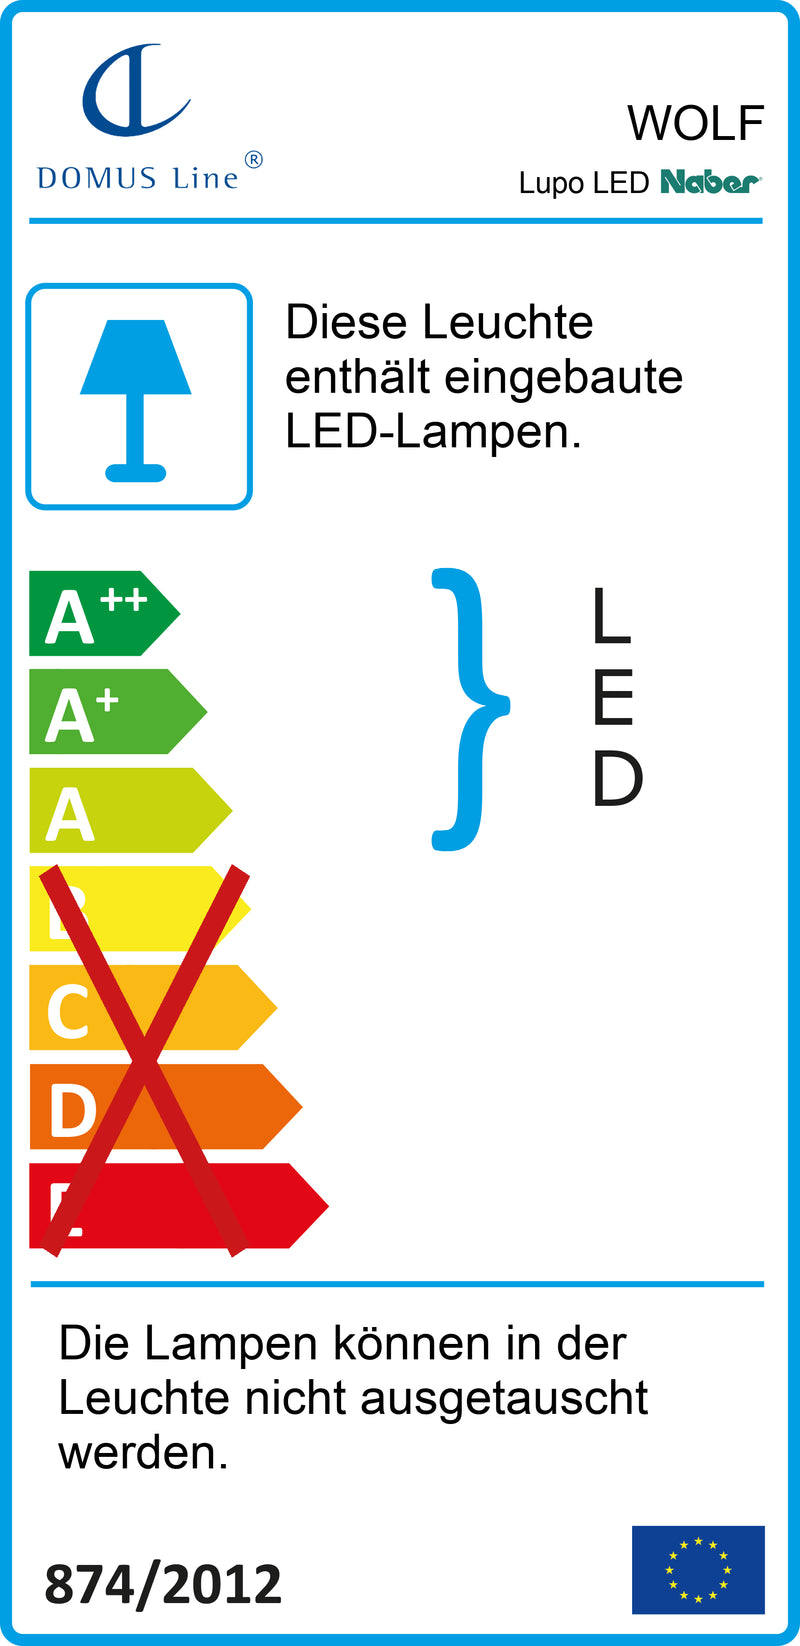 E-Label zu Zeichnung zu Lupo LED als Variante L 900 mm, 15 W, alufarbig von Naber GmbH in der Kategorie Lichttechnik in Österreich auf conceptshop.at